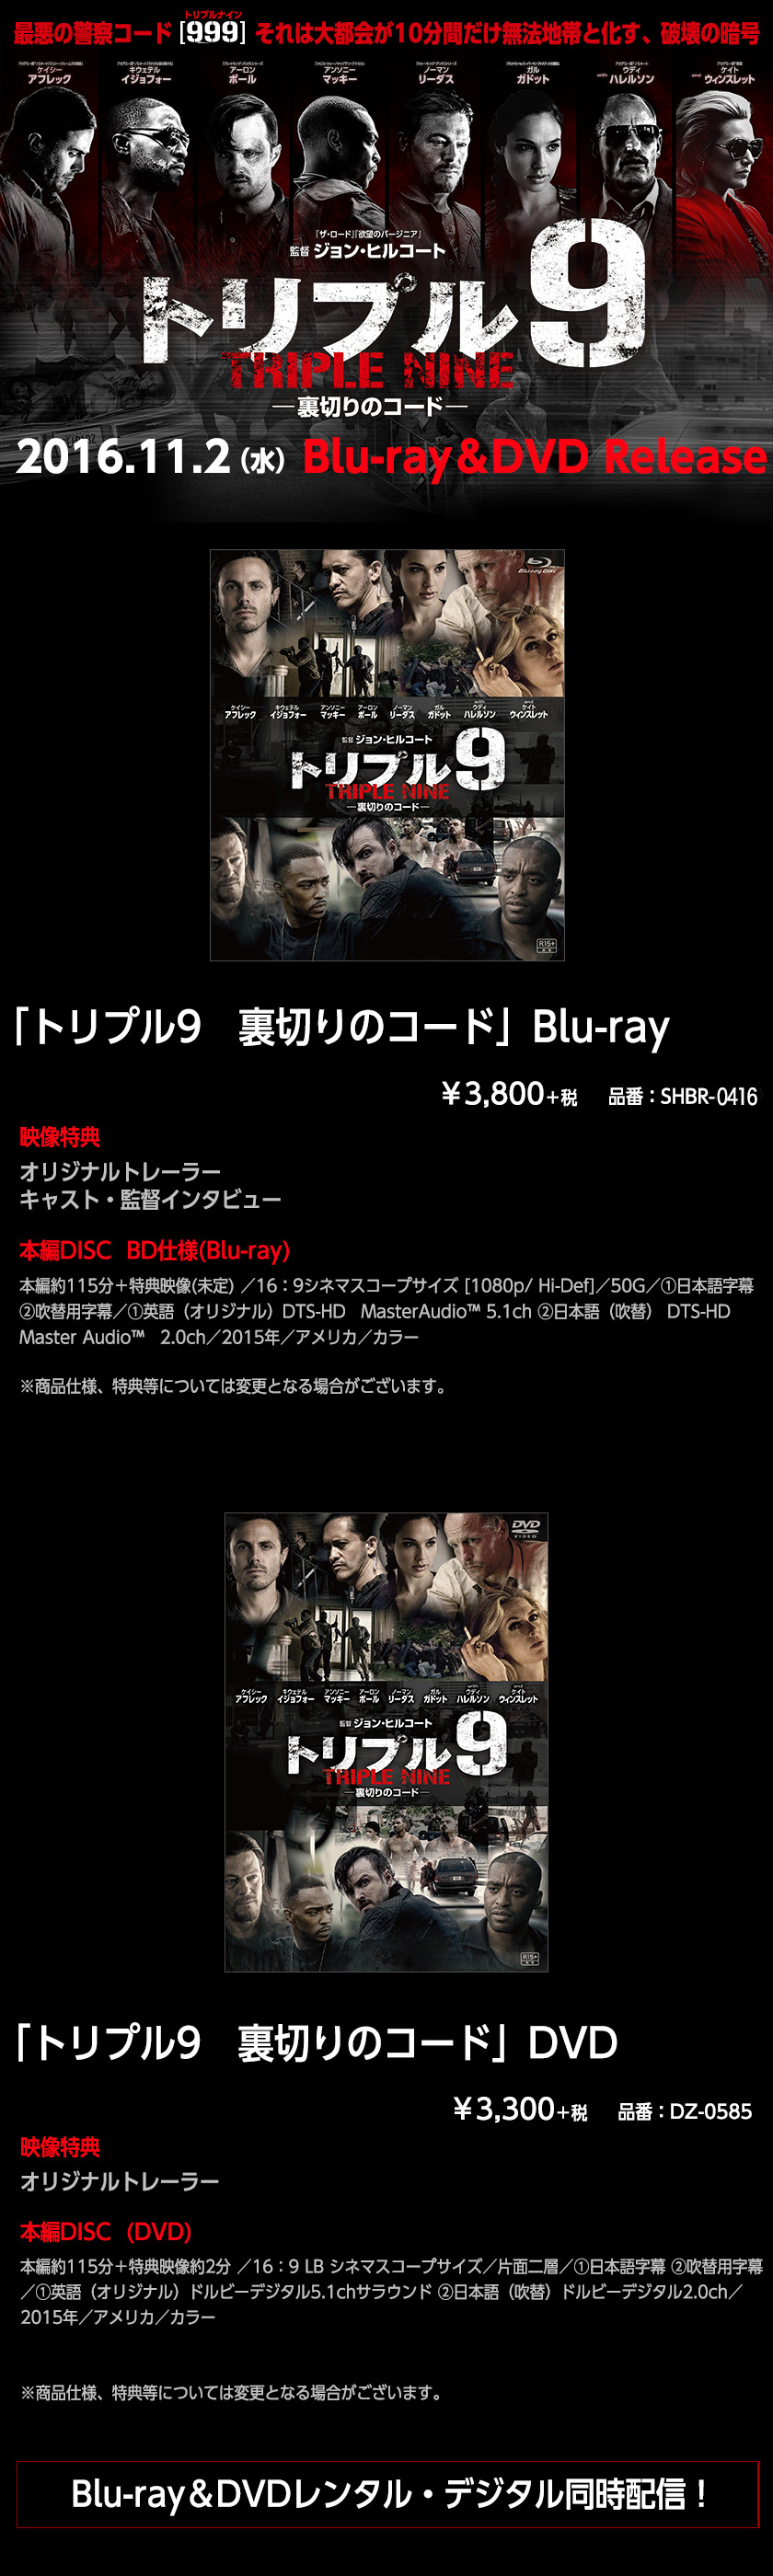 2016.11.2（水）Blu-ray＆DVD Release『トリプル9 裏切りのコード』